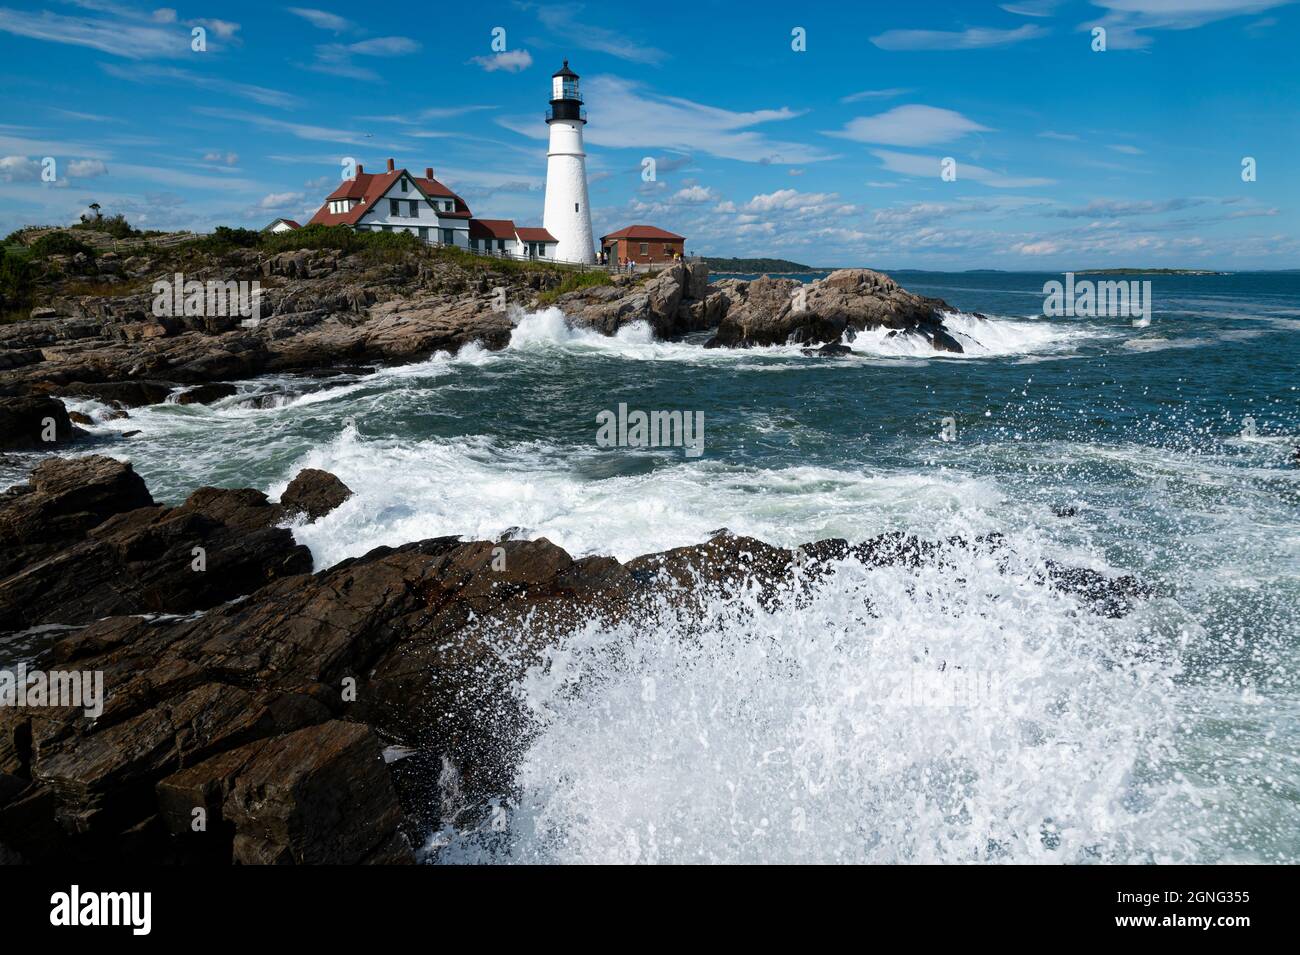 Les vagues entourent le phare de Portland Head à marée haute dans le Maine. Image prise le 9-11, vingt ans plus tard symbolisant la liberté et la sécurité. Banque D'Images